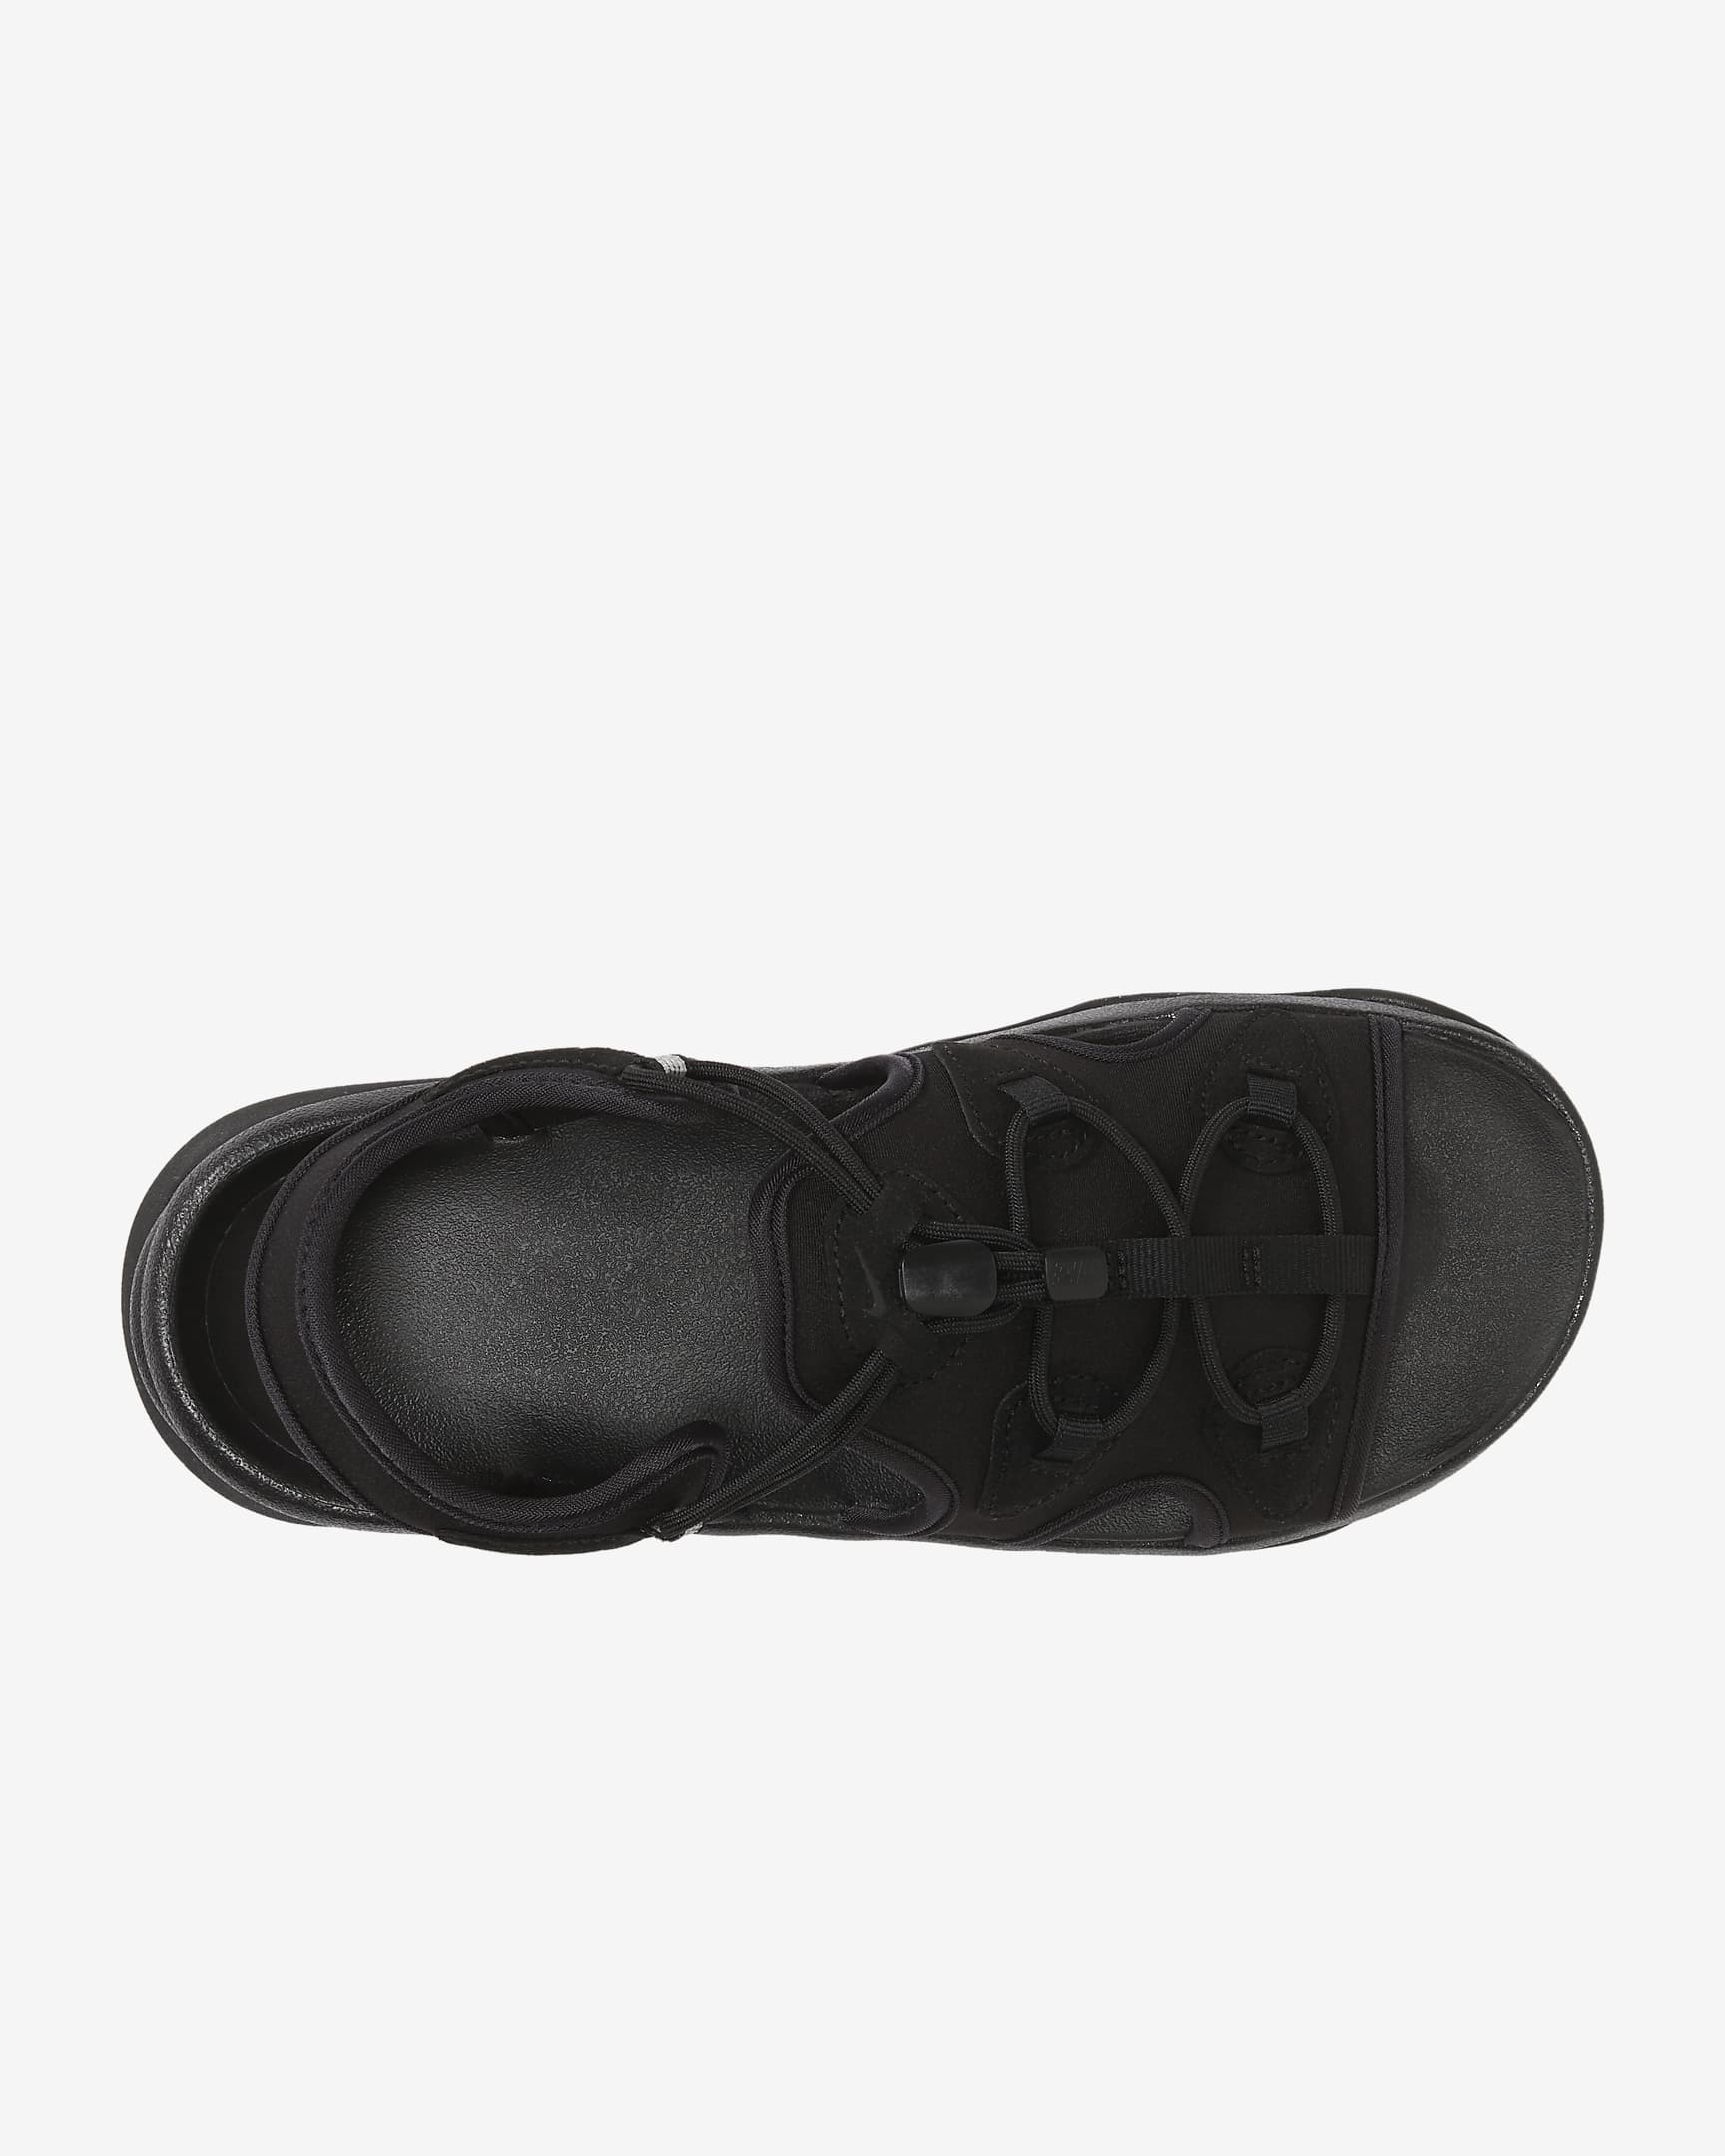 Nike Air Max Koko 女款涼鞋 - 黑色/Anthracite/黑色